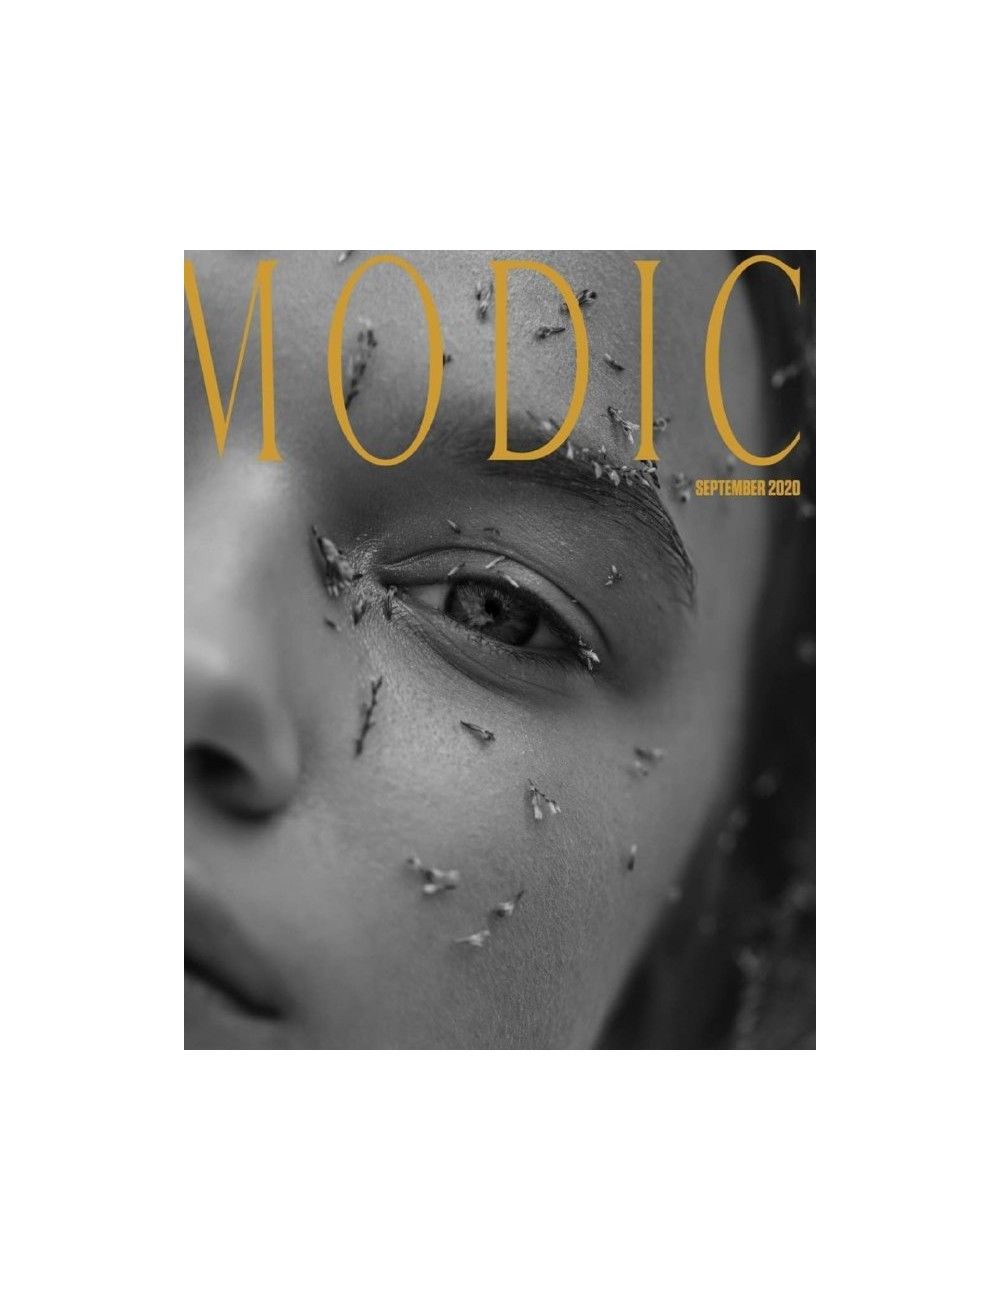 Modic Magazine FW 2020 - Digital Cover No. 1